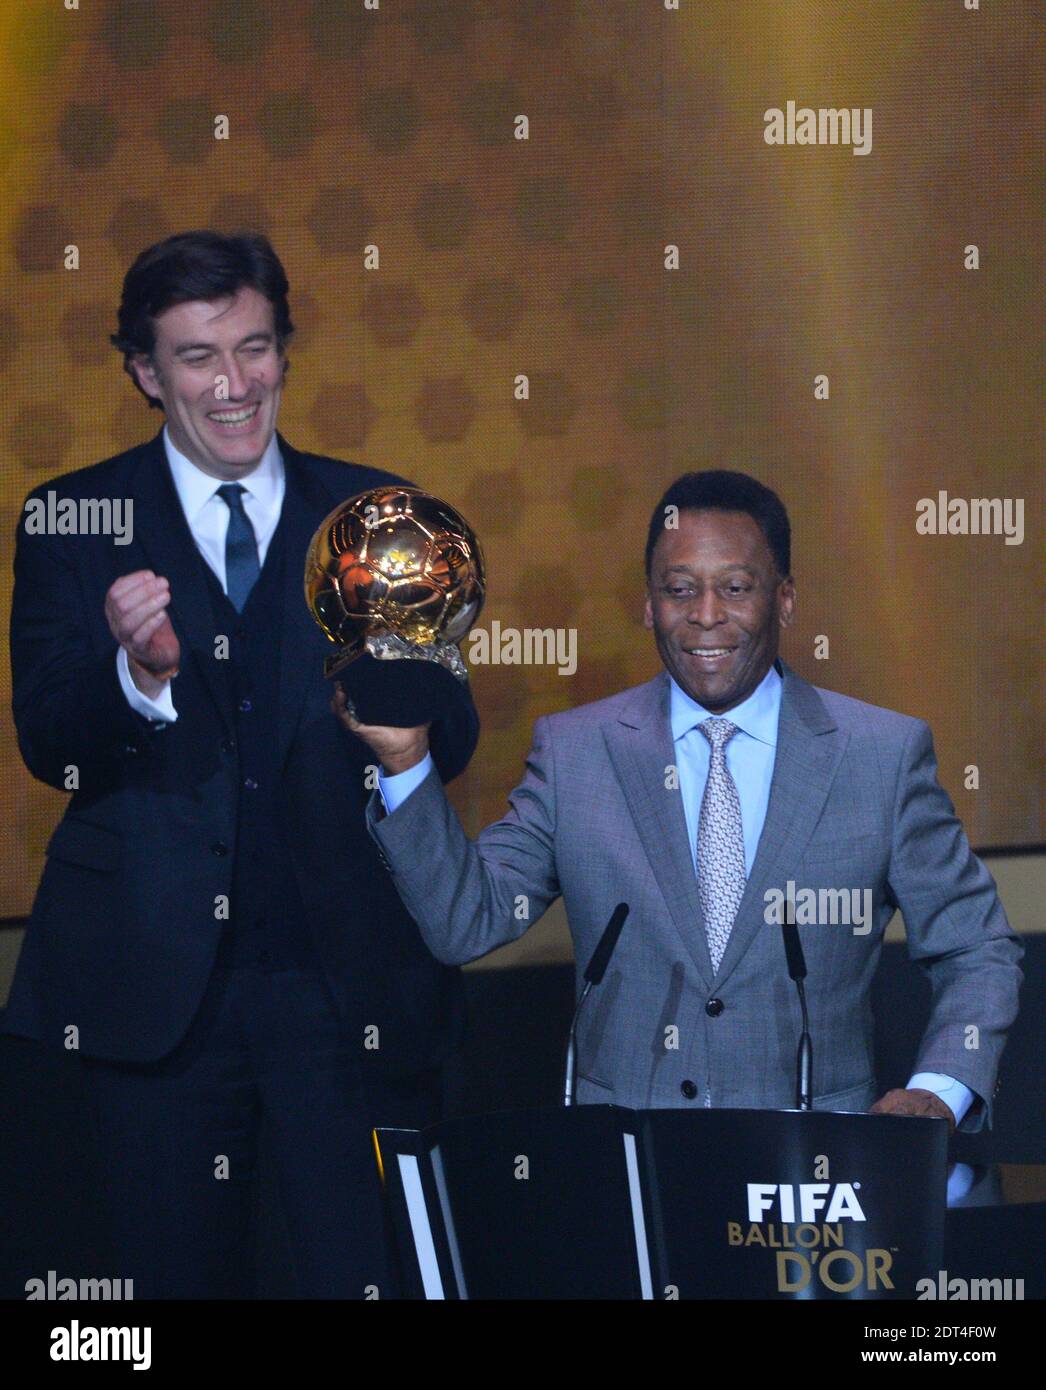 Brazilian football legend Pele receives an honorary FIFA Ballon d'Or award  during FIFA Ballon d'